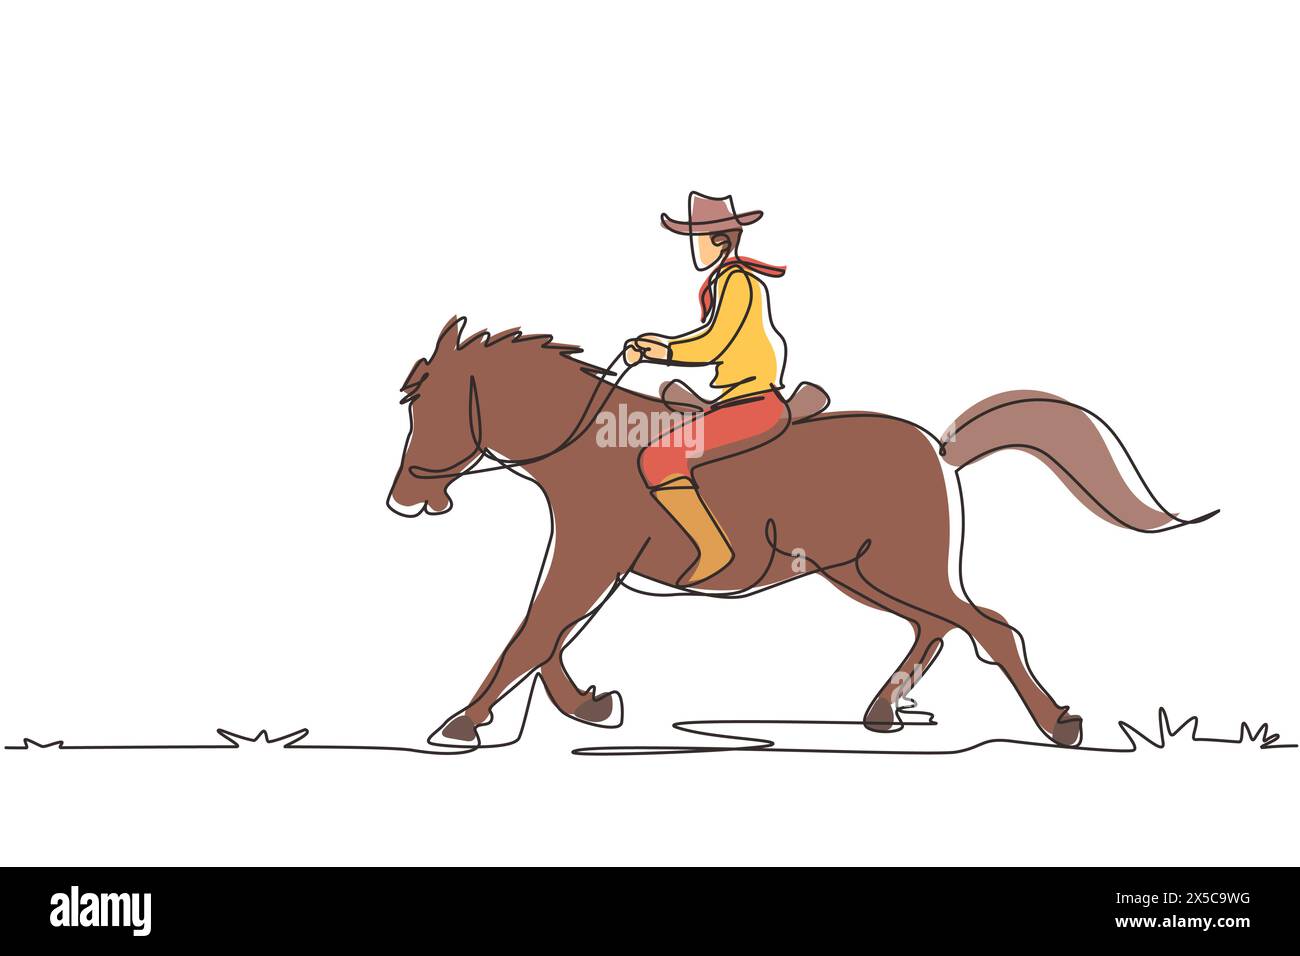 Durchgehende eine Linie, die den wilden Westen und die Wüste mit einem Cowboy reitet. Mustang und Person im Freien bei Sonnenuntergang. Cowboy- und Pferdesymbol oder -Logo. Si Stock Vektor